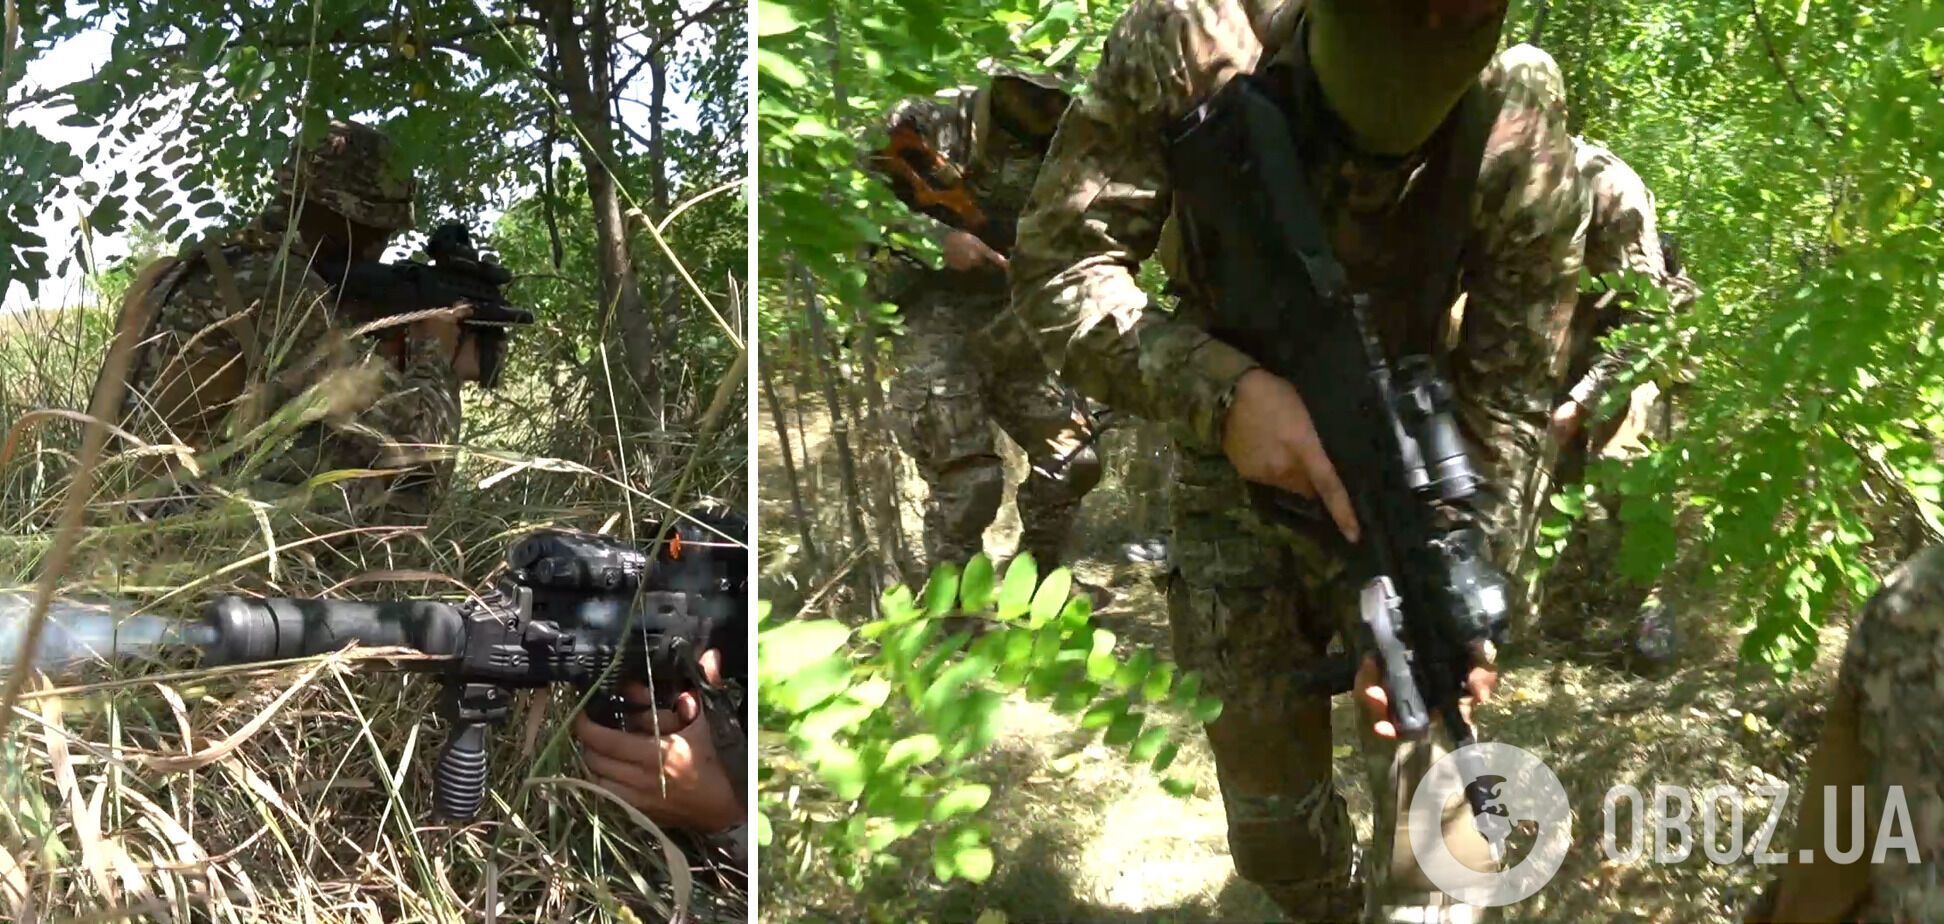 Учения украинских военнослужащих